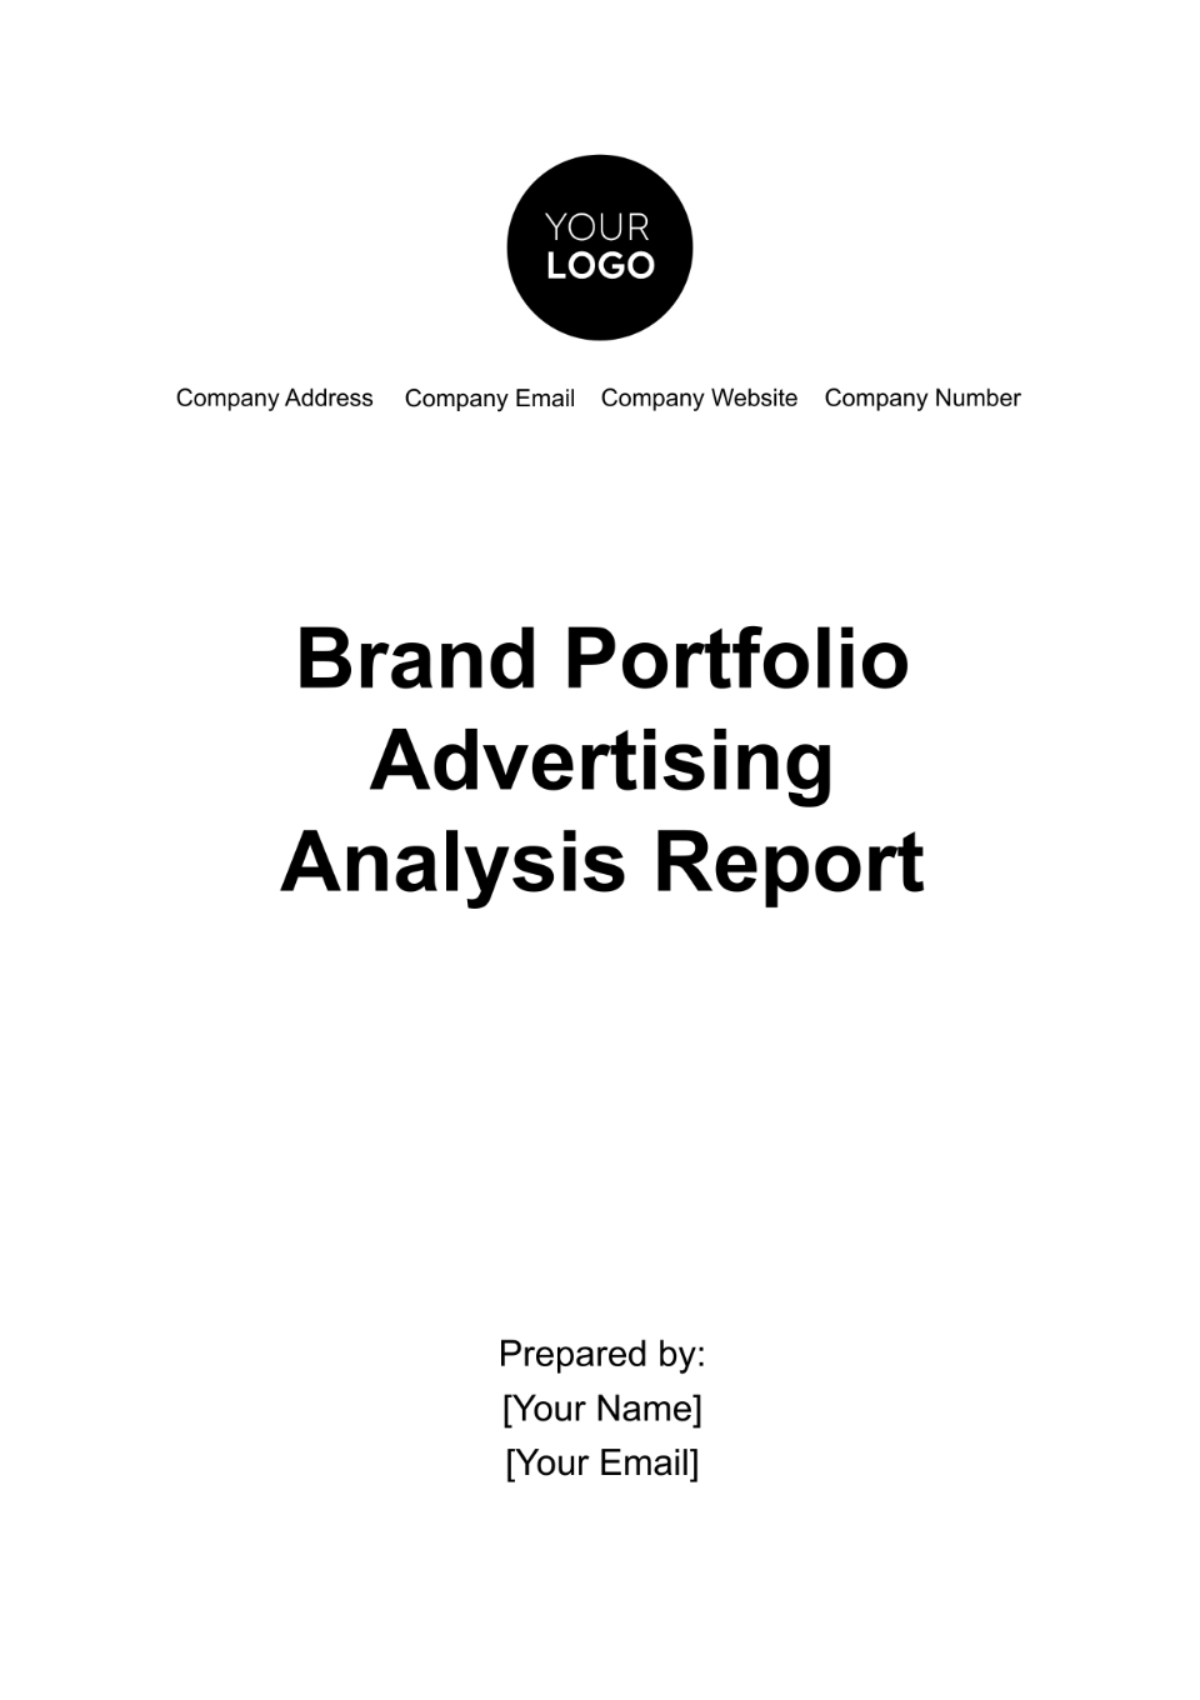 Free Brand Portfolio Advertising Analysis Report Template